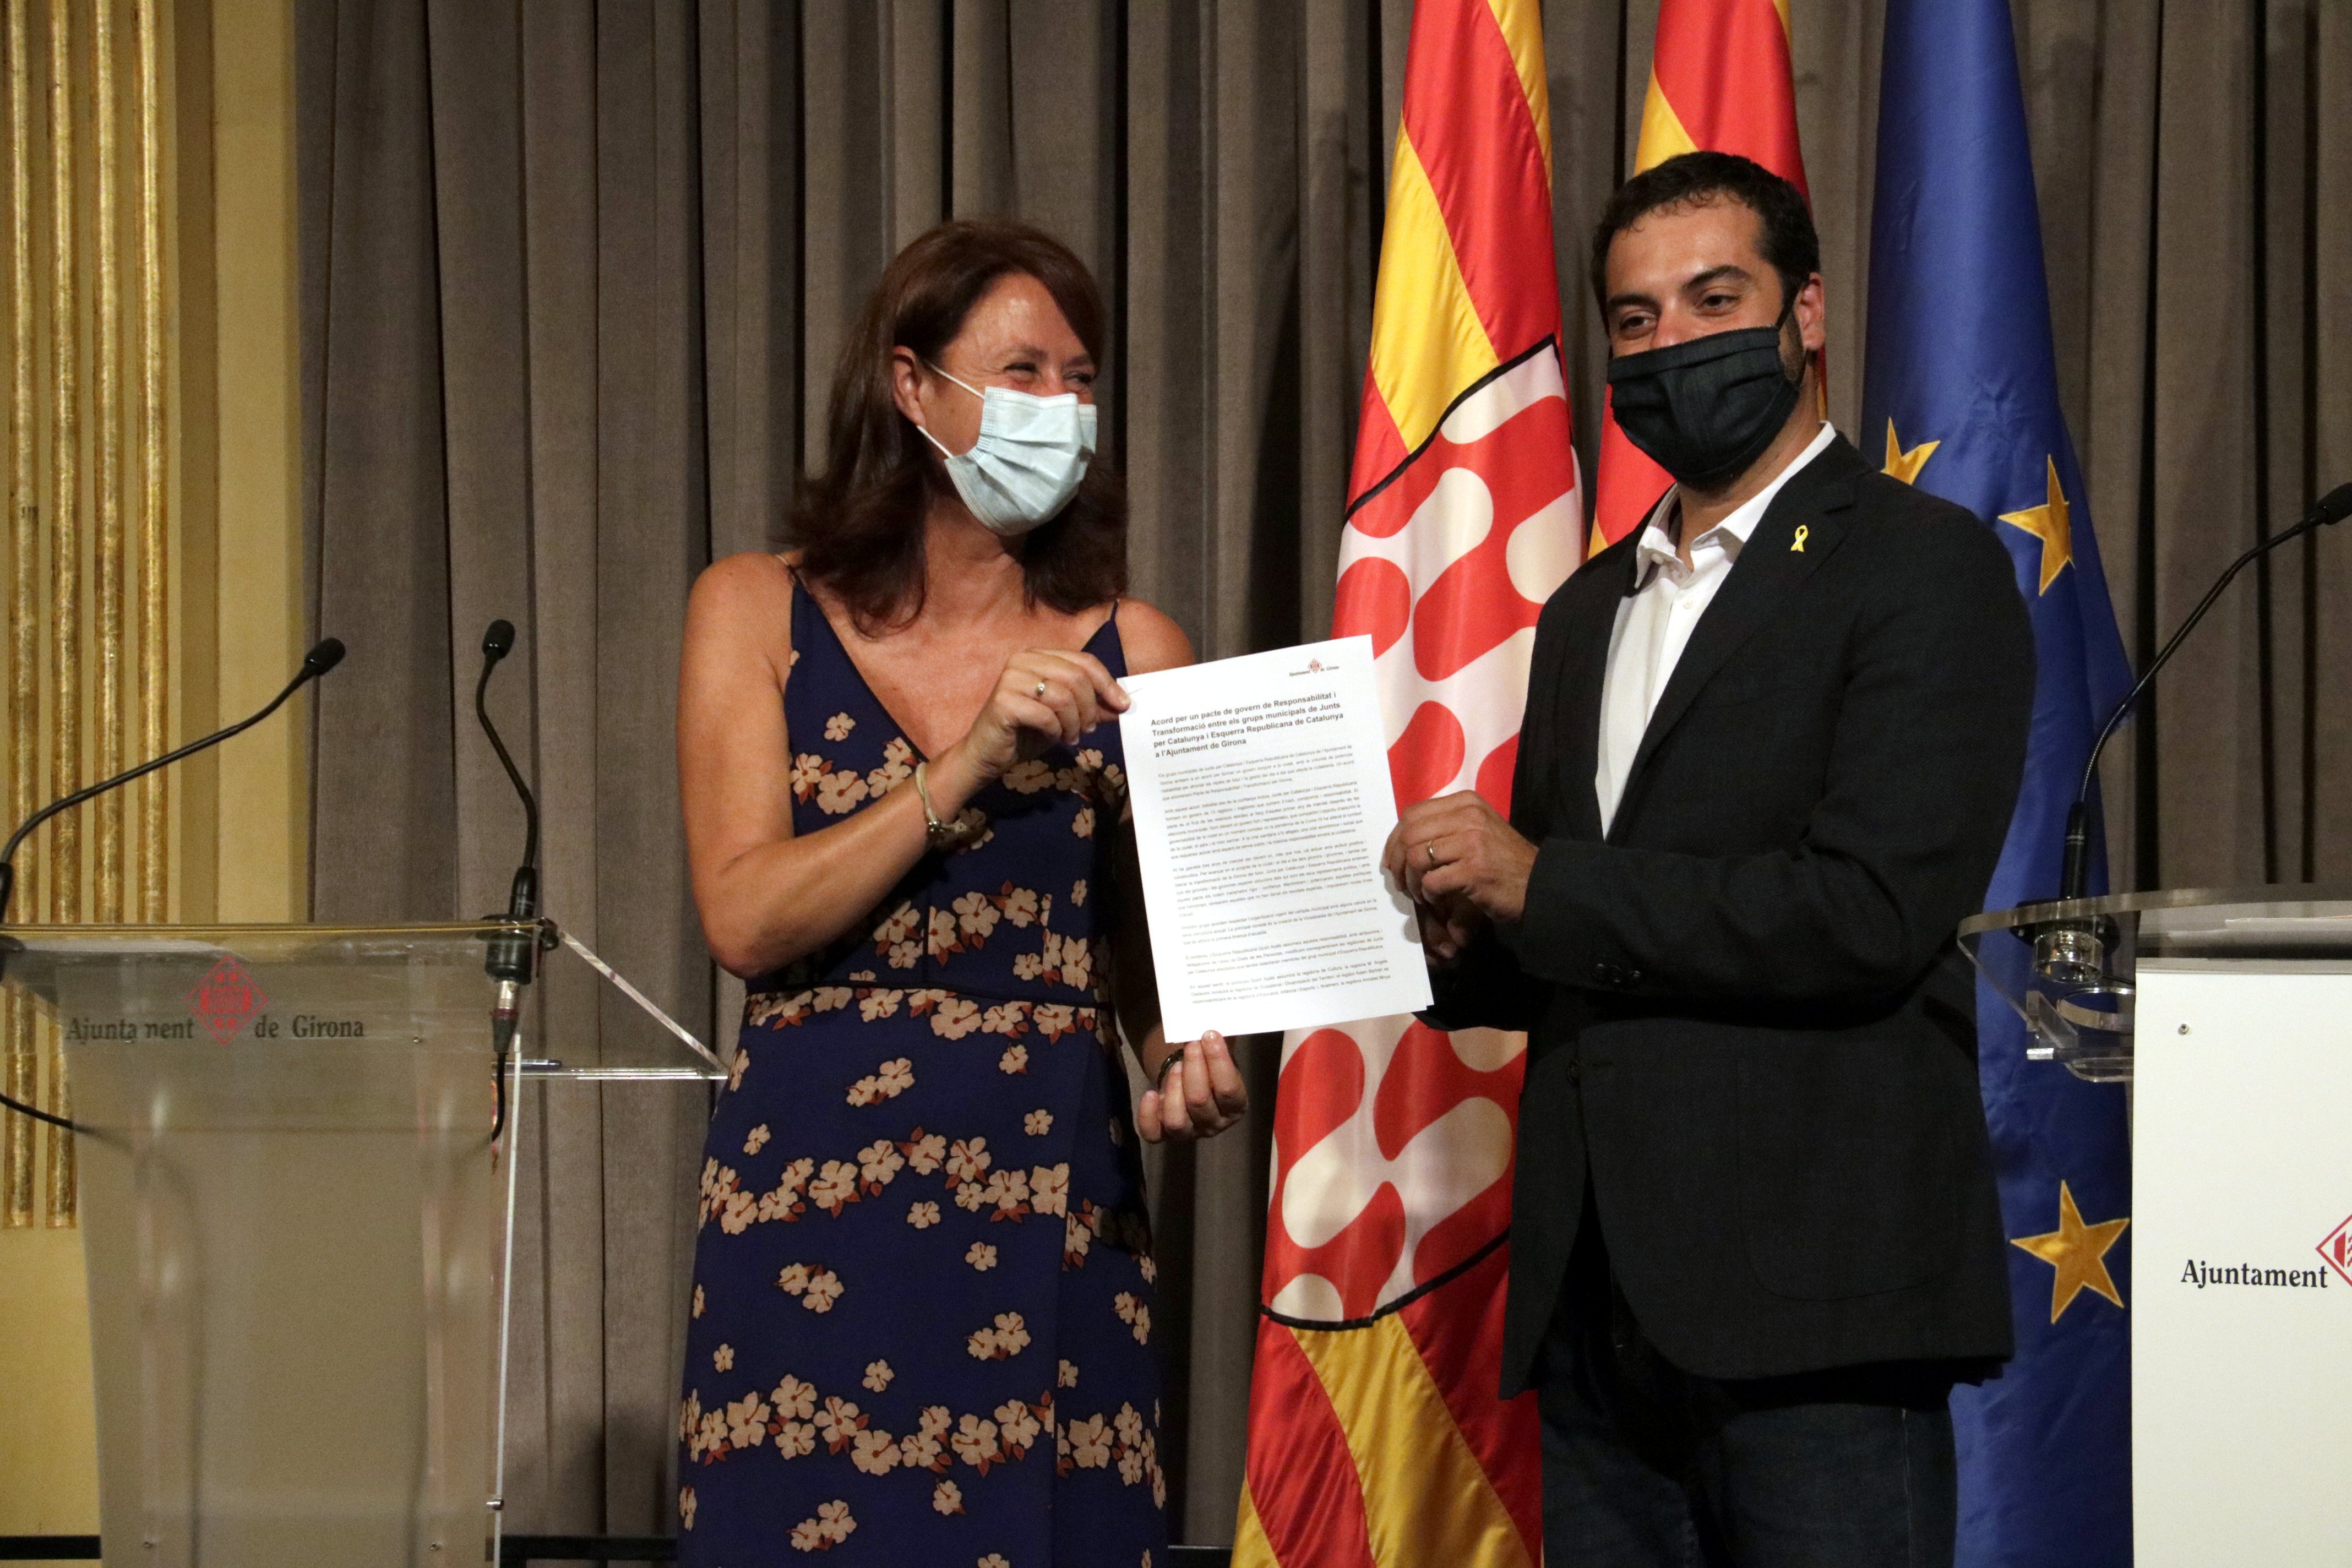 JxCat incorpora ERC al gobierno de Girona: "Somos un gobierno fuerte y estable"